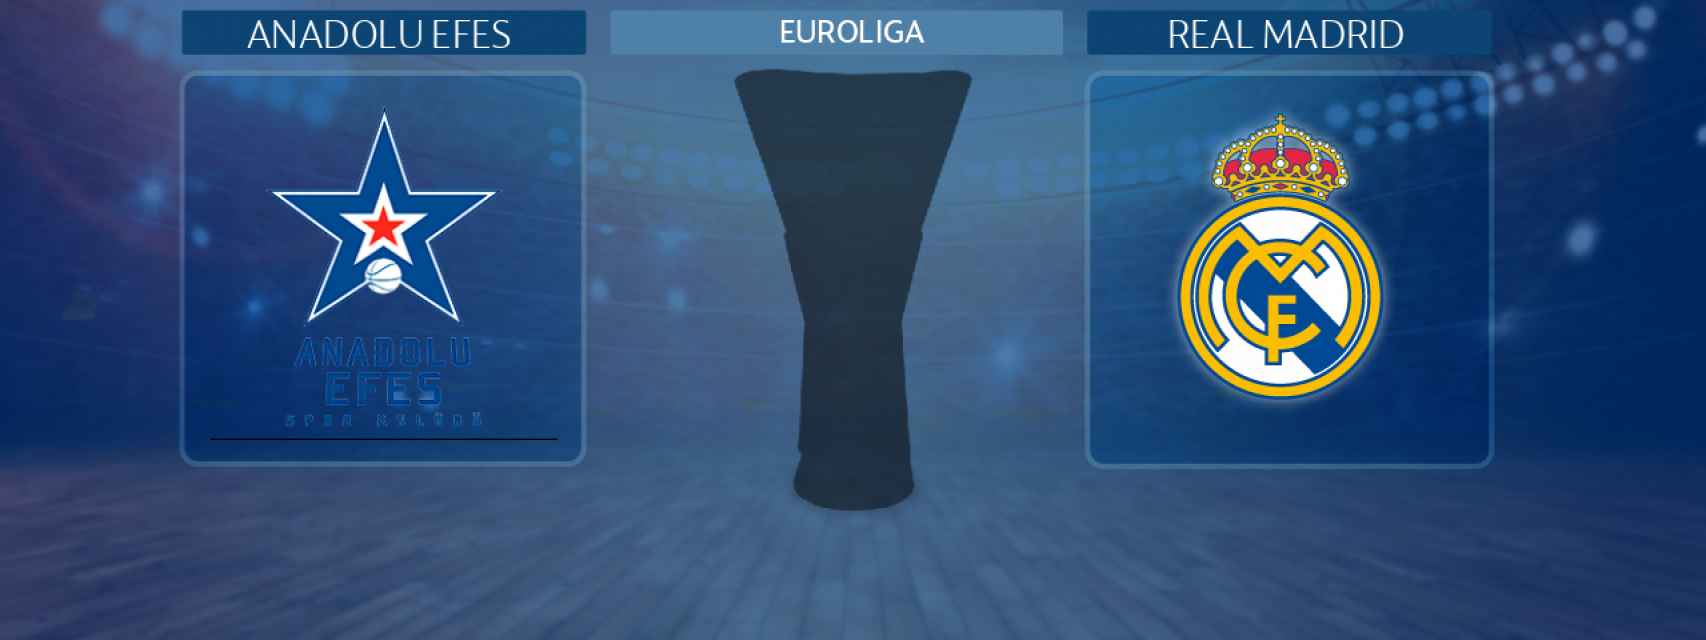 Anadolu Efes - Real Madrid, partido de la Euroliga